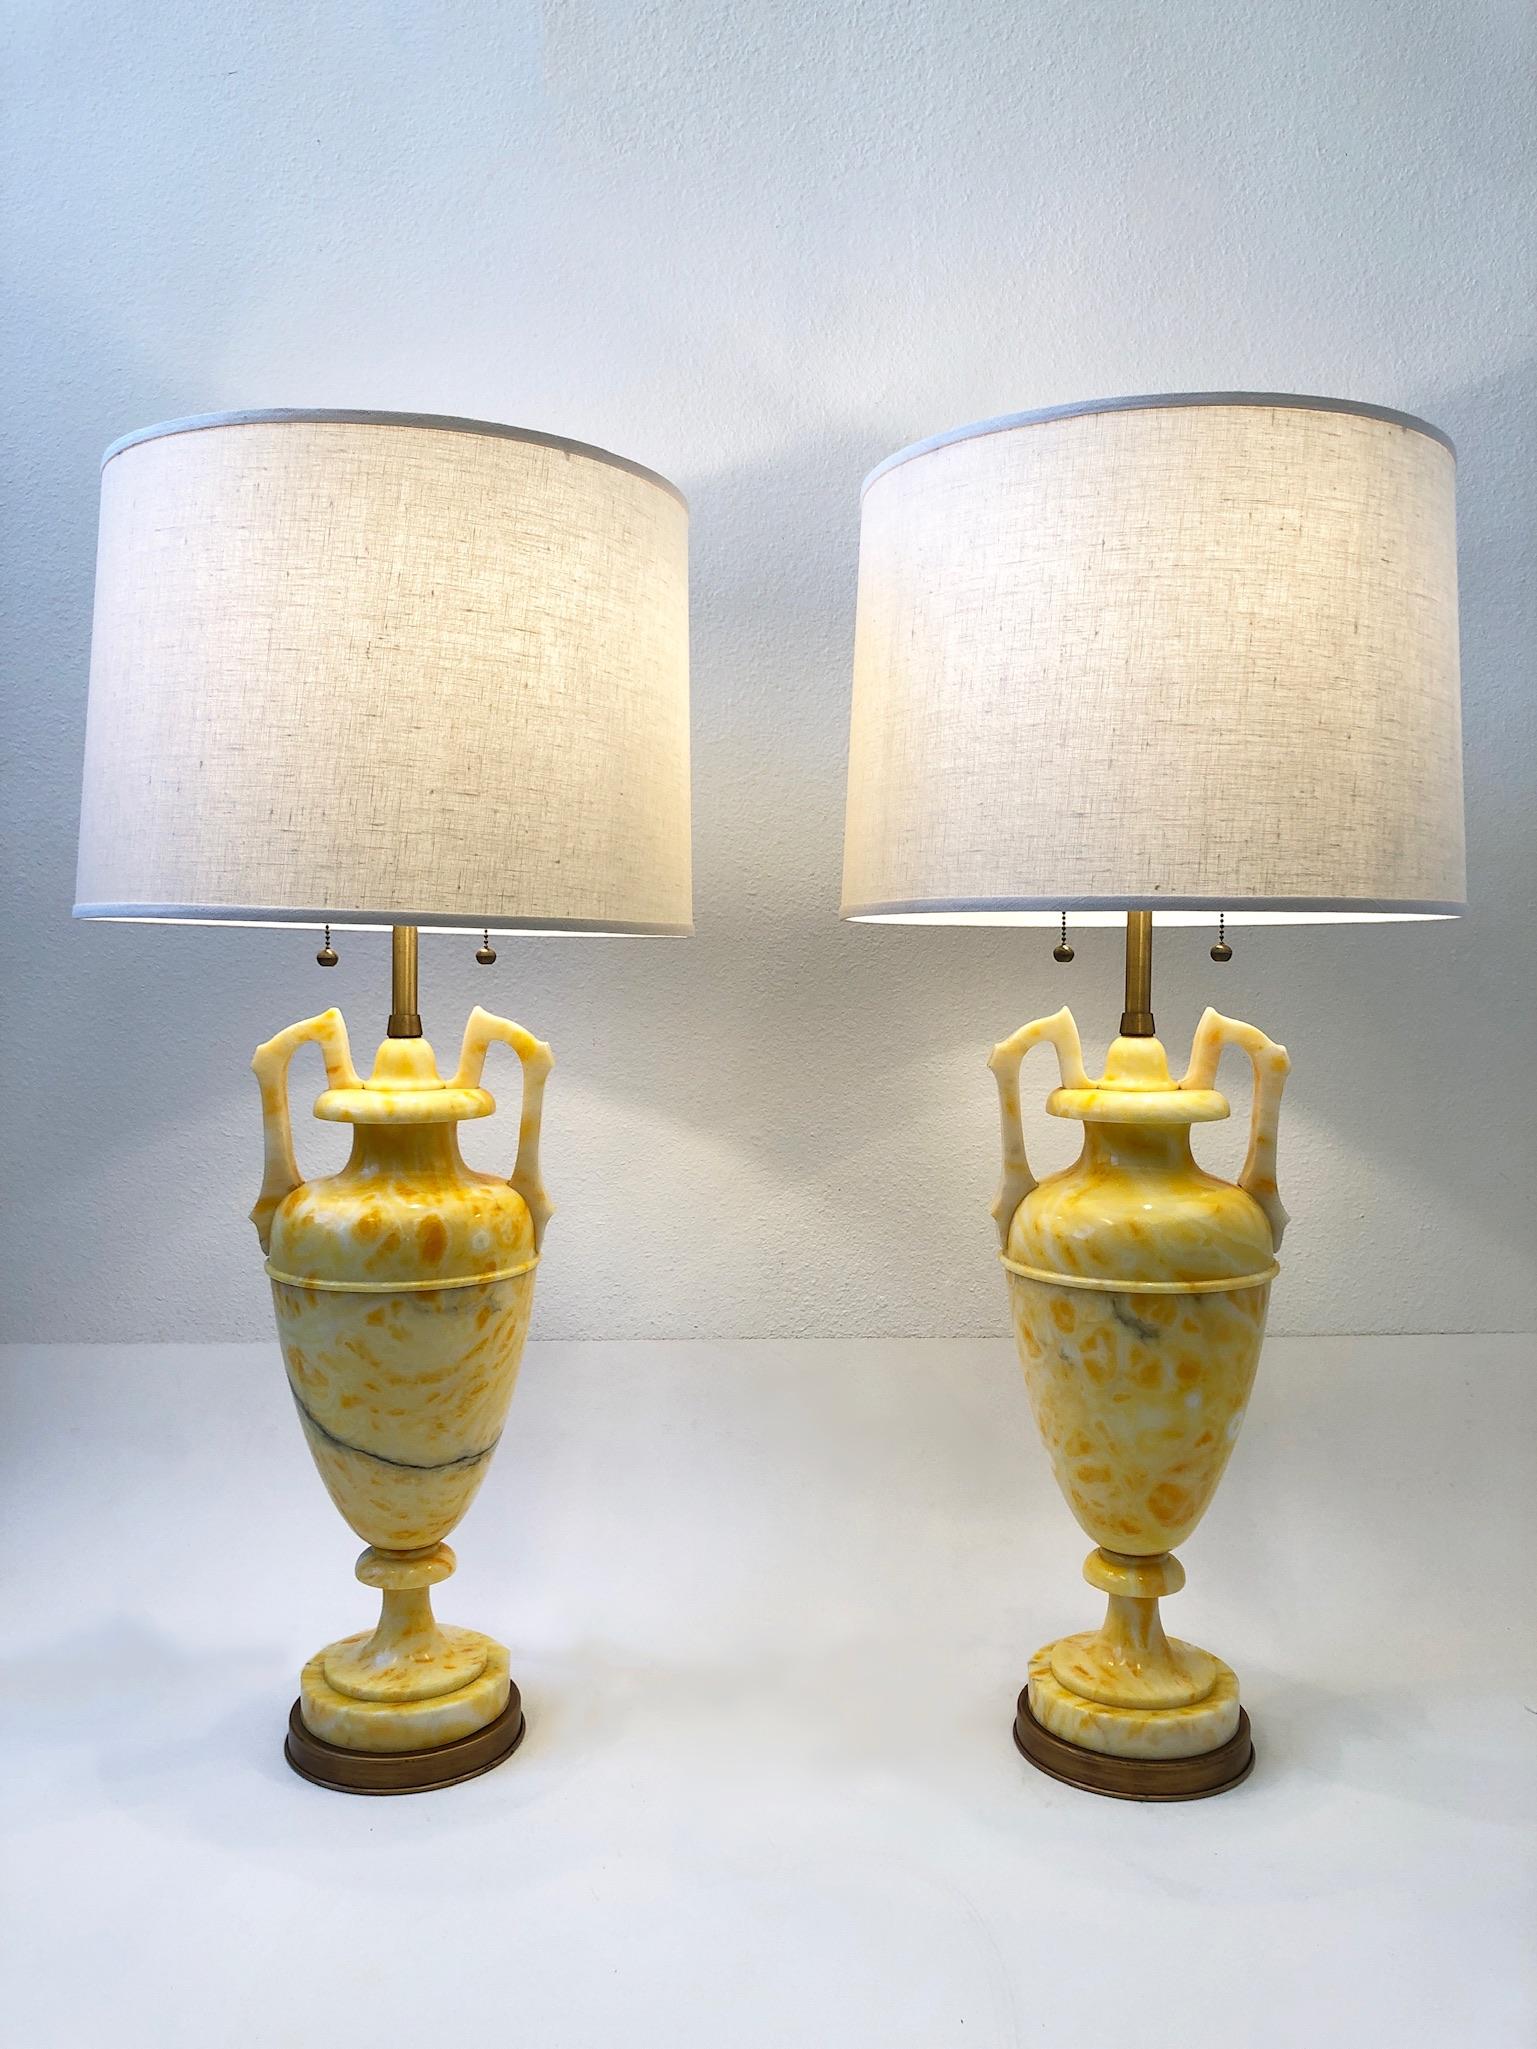 Spectaculaire paire de lampes de table italiennes en marbre jaune et laiton satiné par Marbro Lamp Co. 
Couleur jaune vibrante. Nouveau câblage et nouveaux abat-jour en lin vanille. 
Mesures : 38